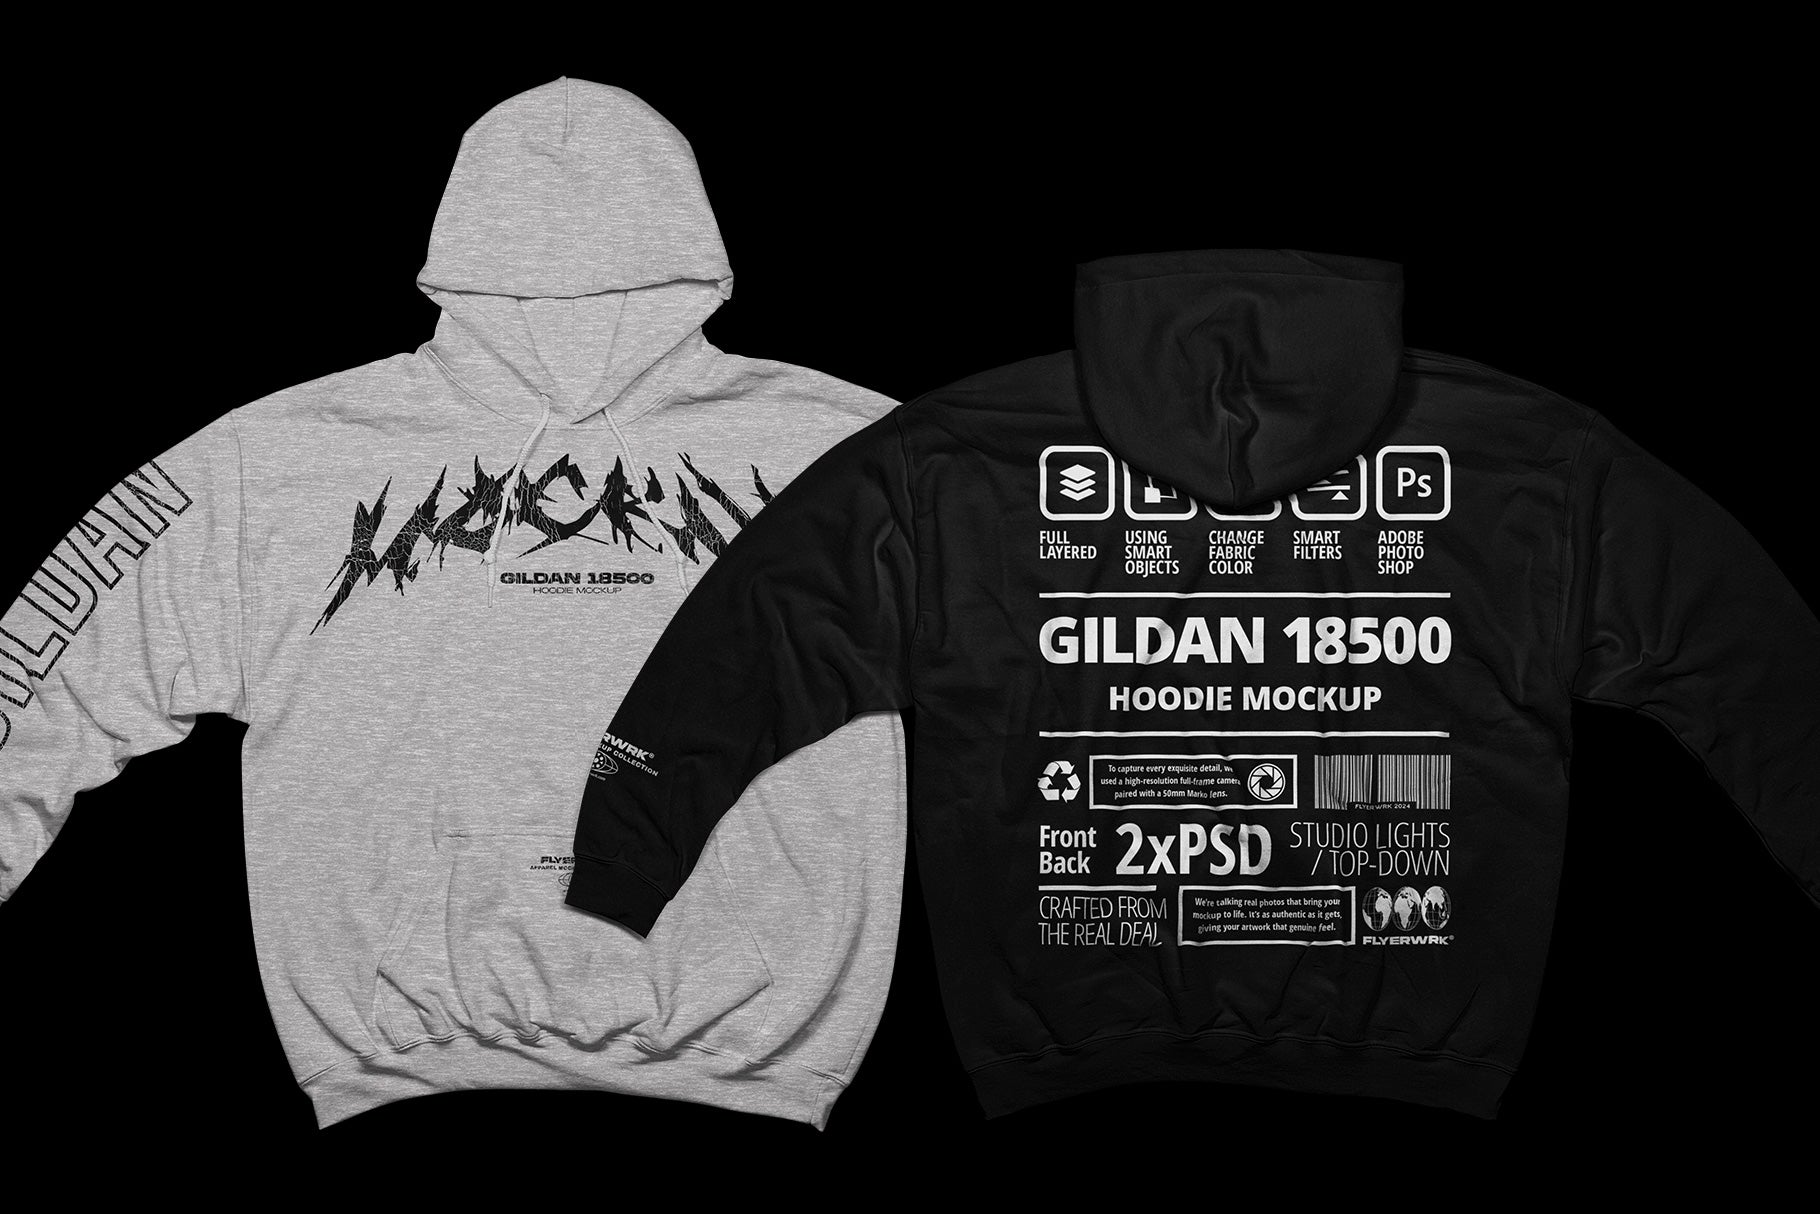 Gildan 18500 Hoodie Mockup - Wide arms